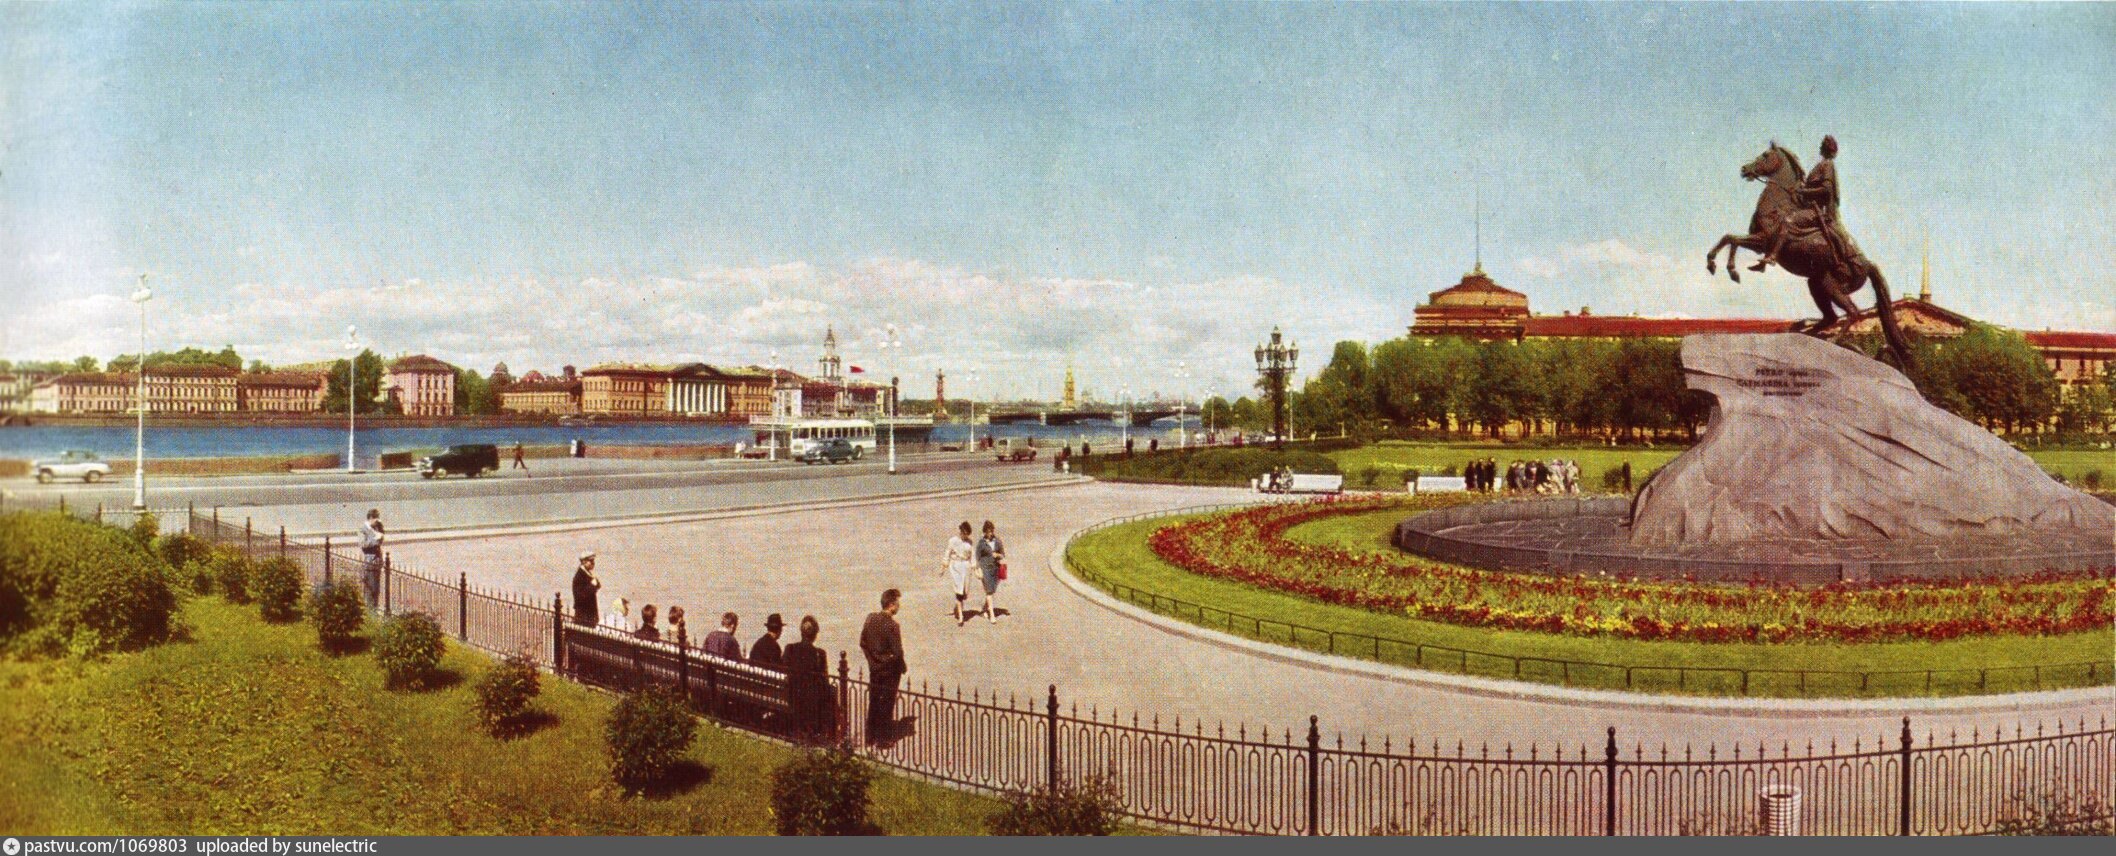 площадь декабристов в санкт петербурге фото